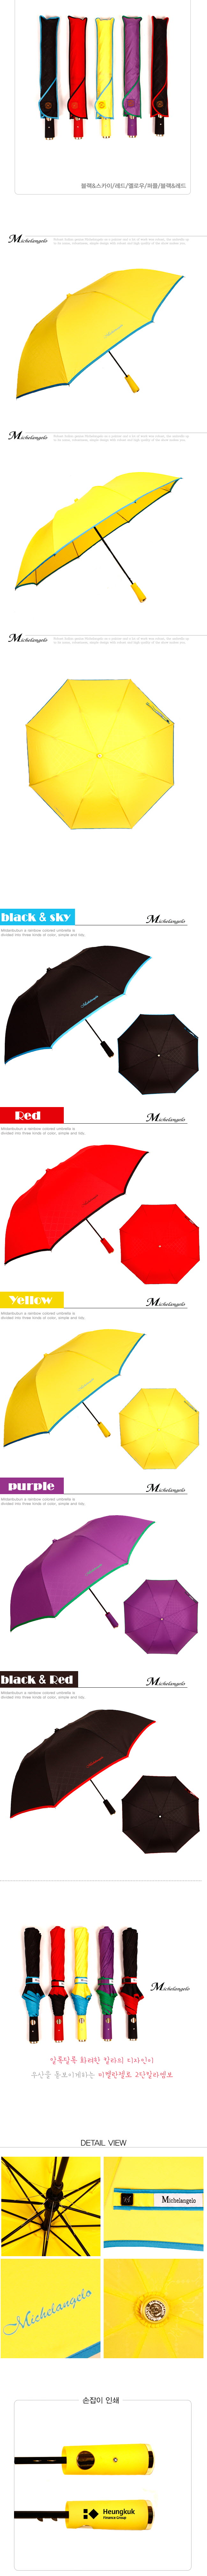 블랙&스카이/레드/옐로우/퍼플/블랙&레드, 알록달록 화려한 칼라의 디자인이 우산을 돋보이게하는 미켈란젤로 2단칼라엠보